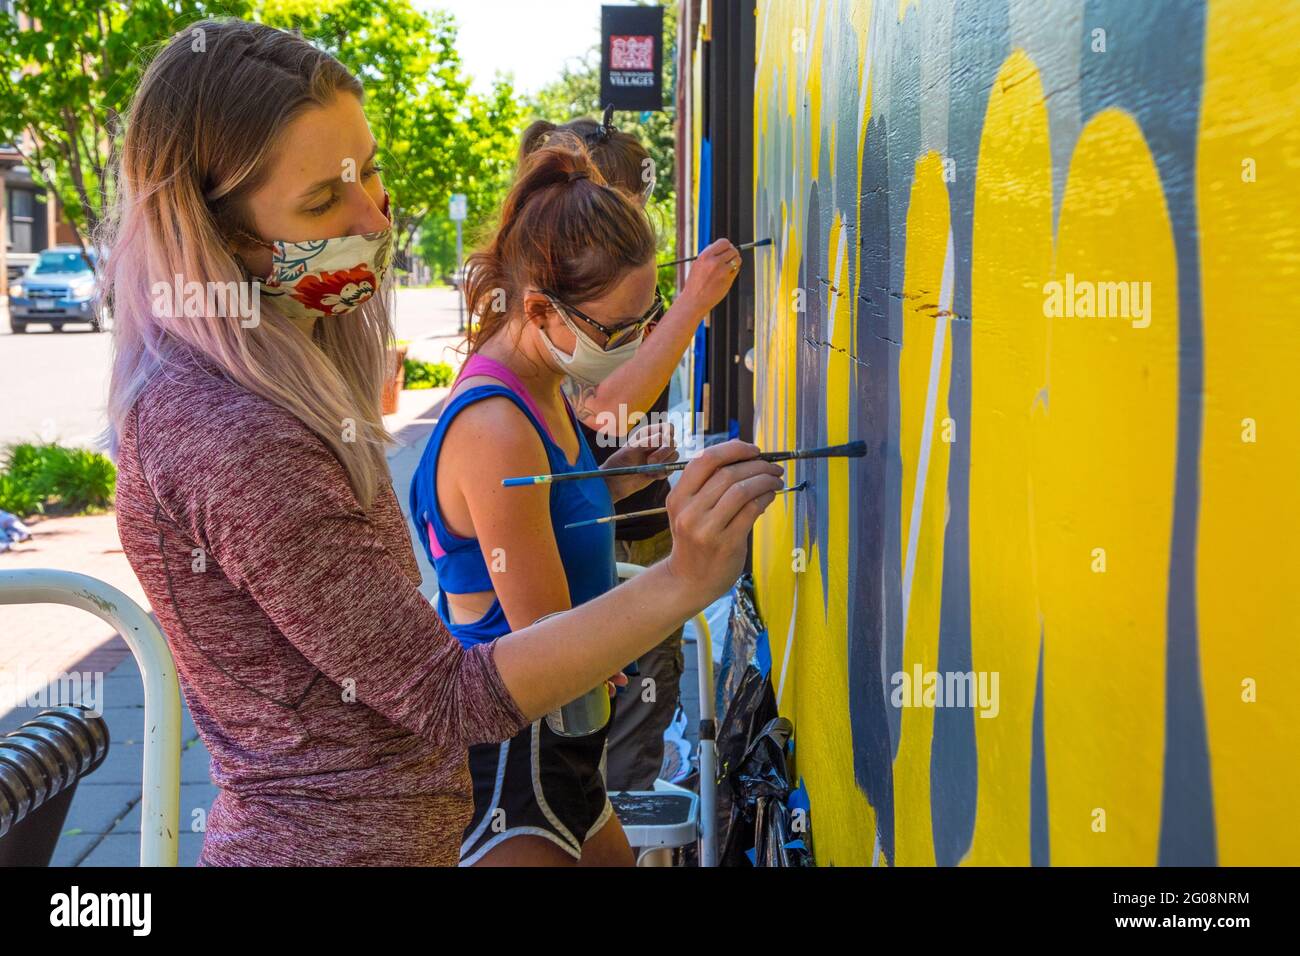 Las mujeres pintan un mural durante las protestas de George Floyd, St. Paul, Minnesota, EE.UU Foto de stock